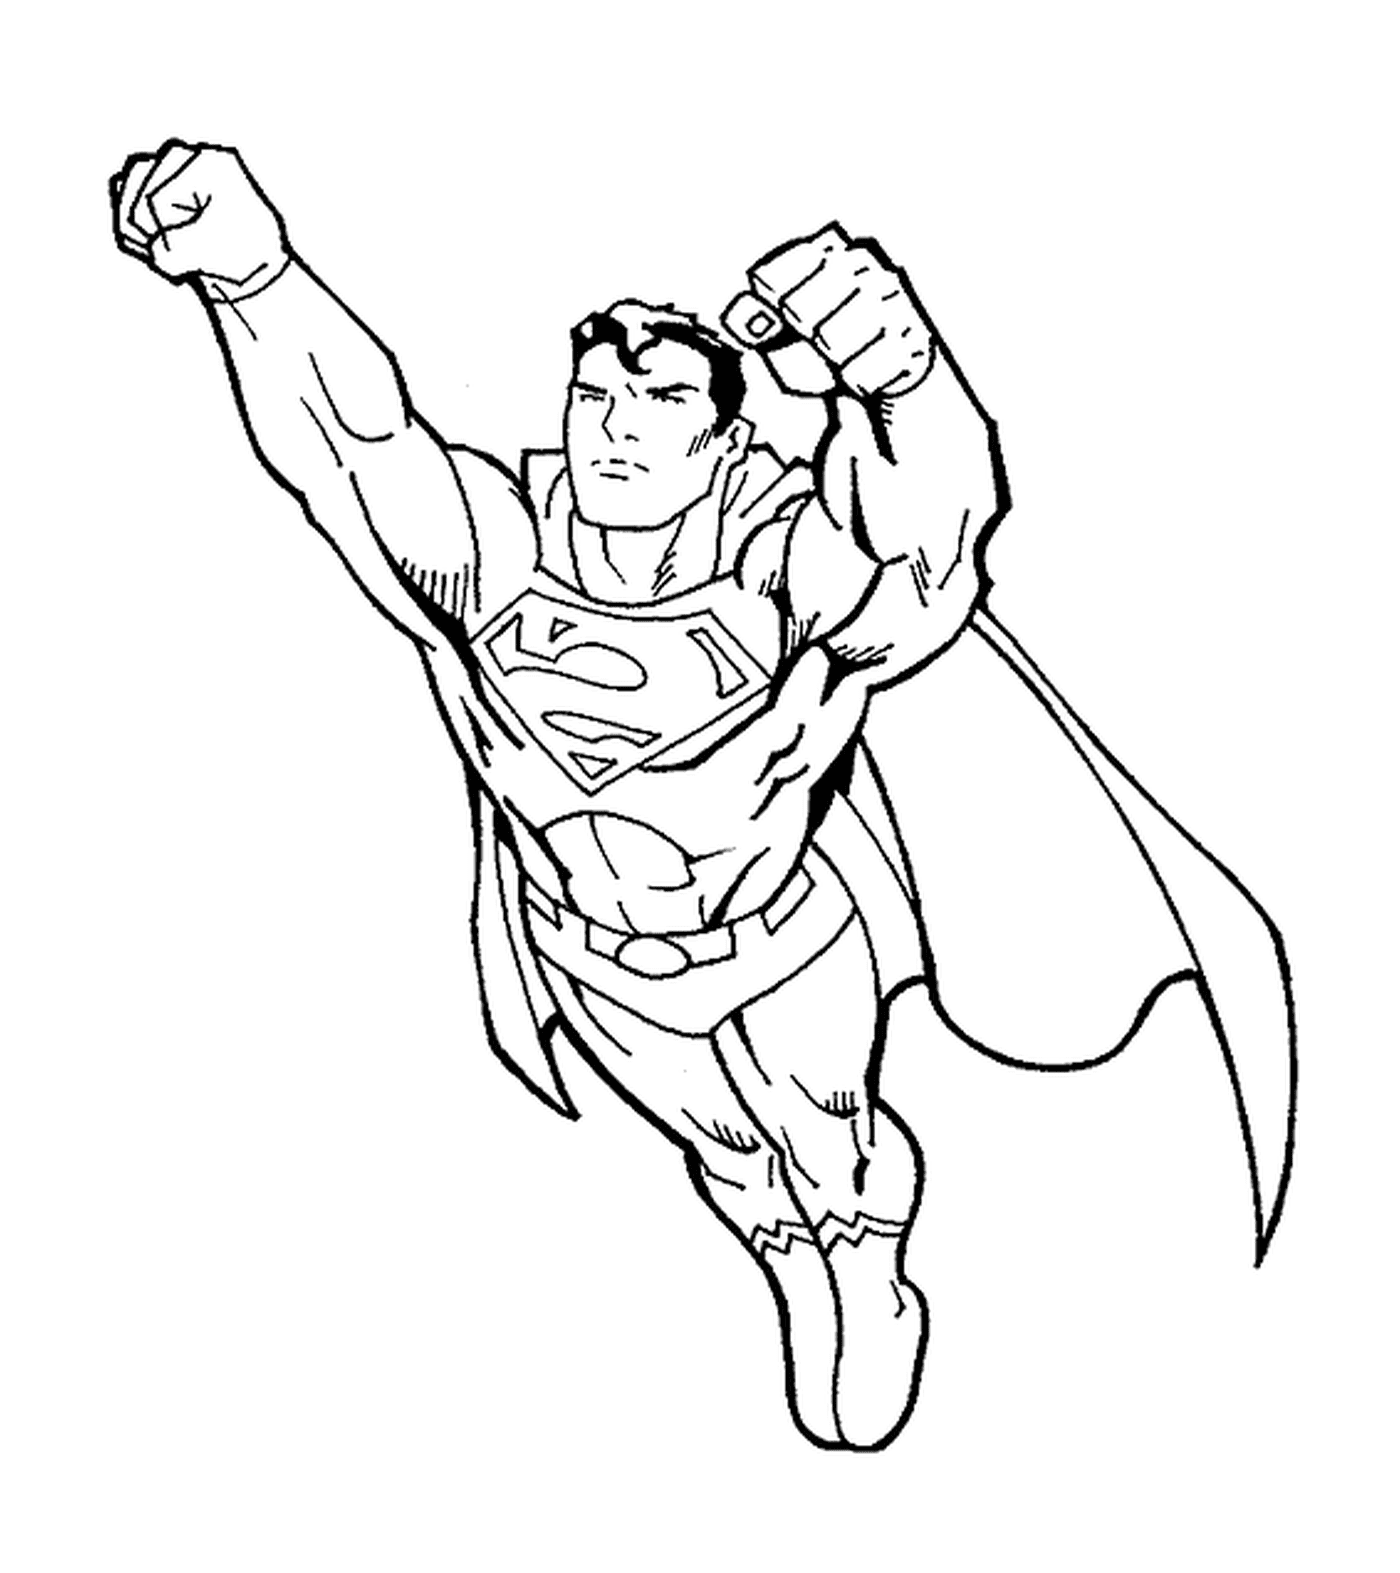  Superman, fists forward 